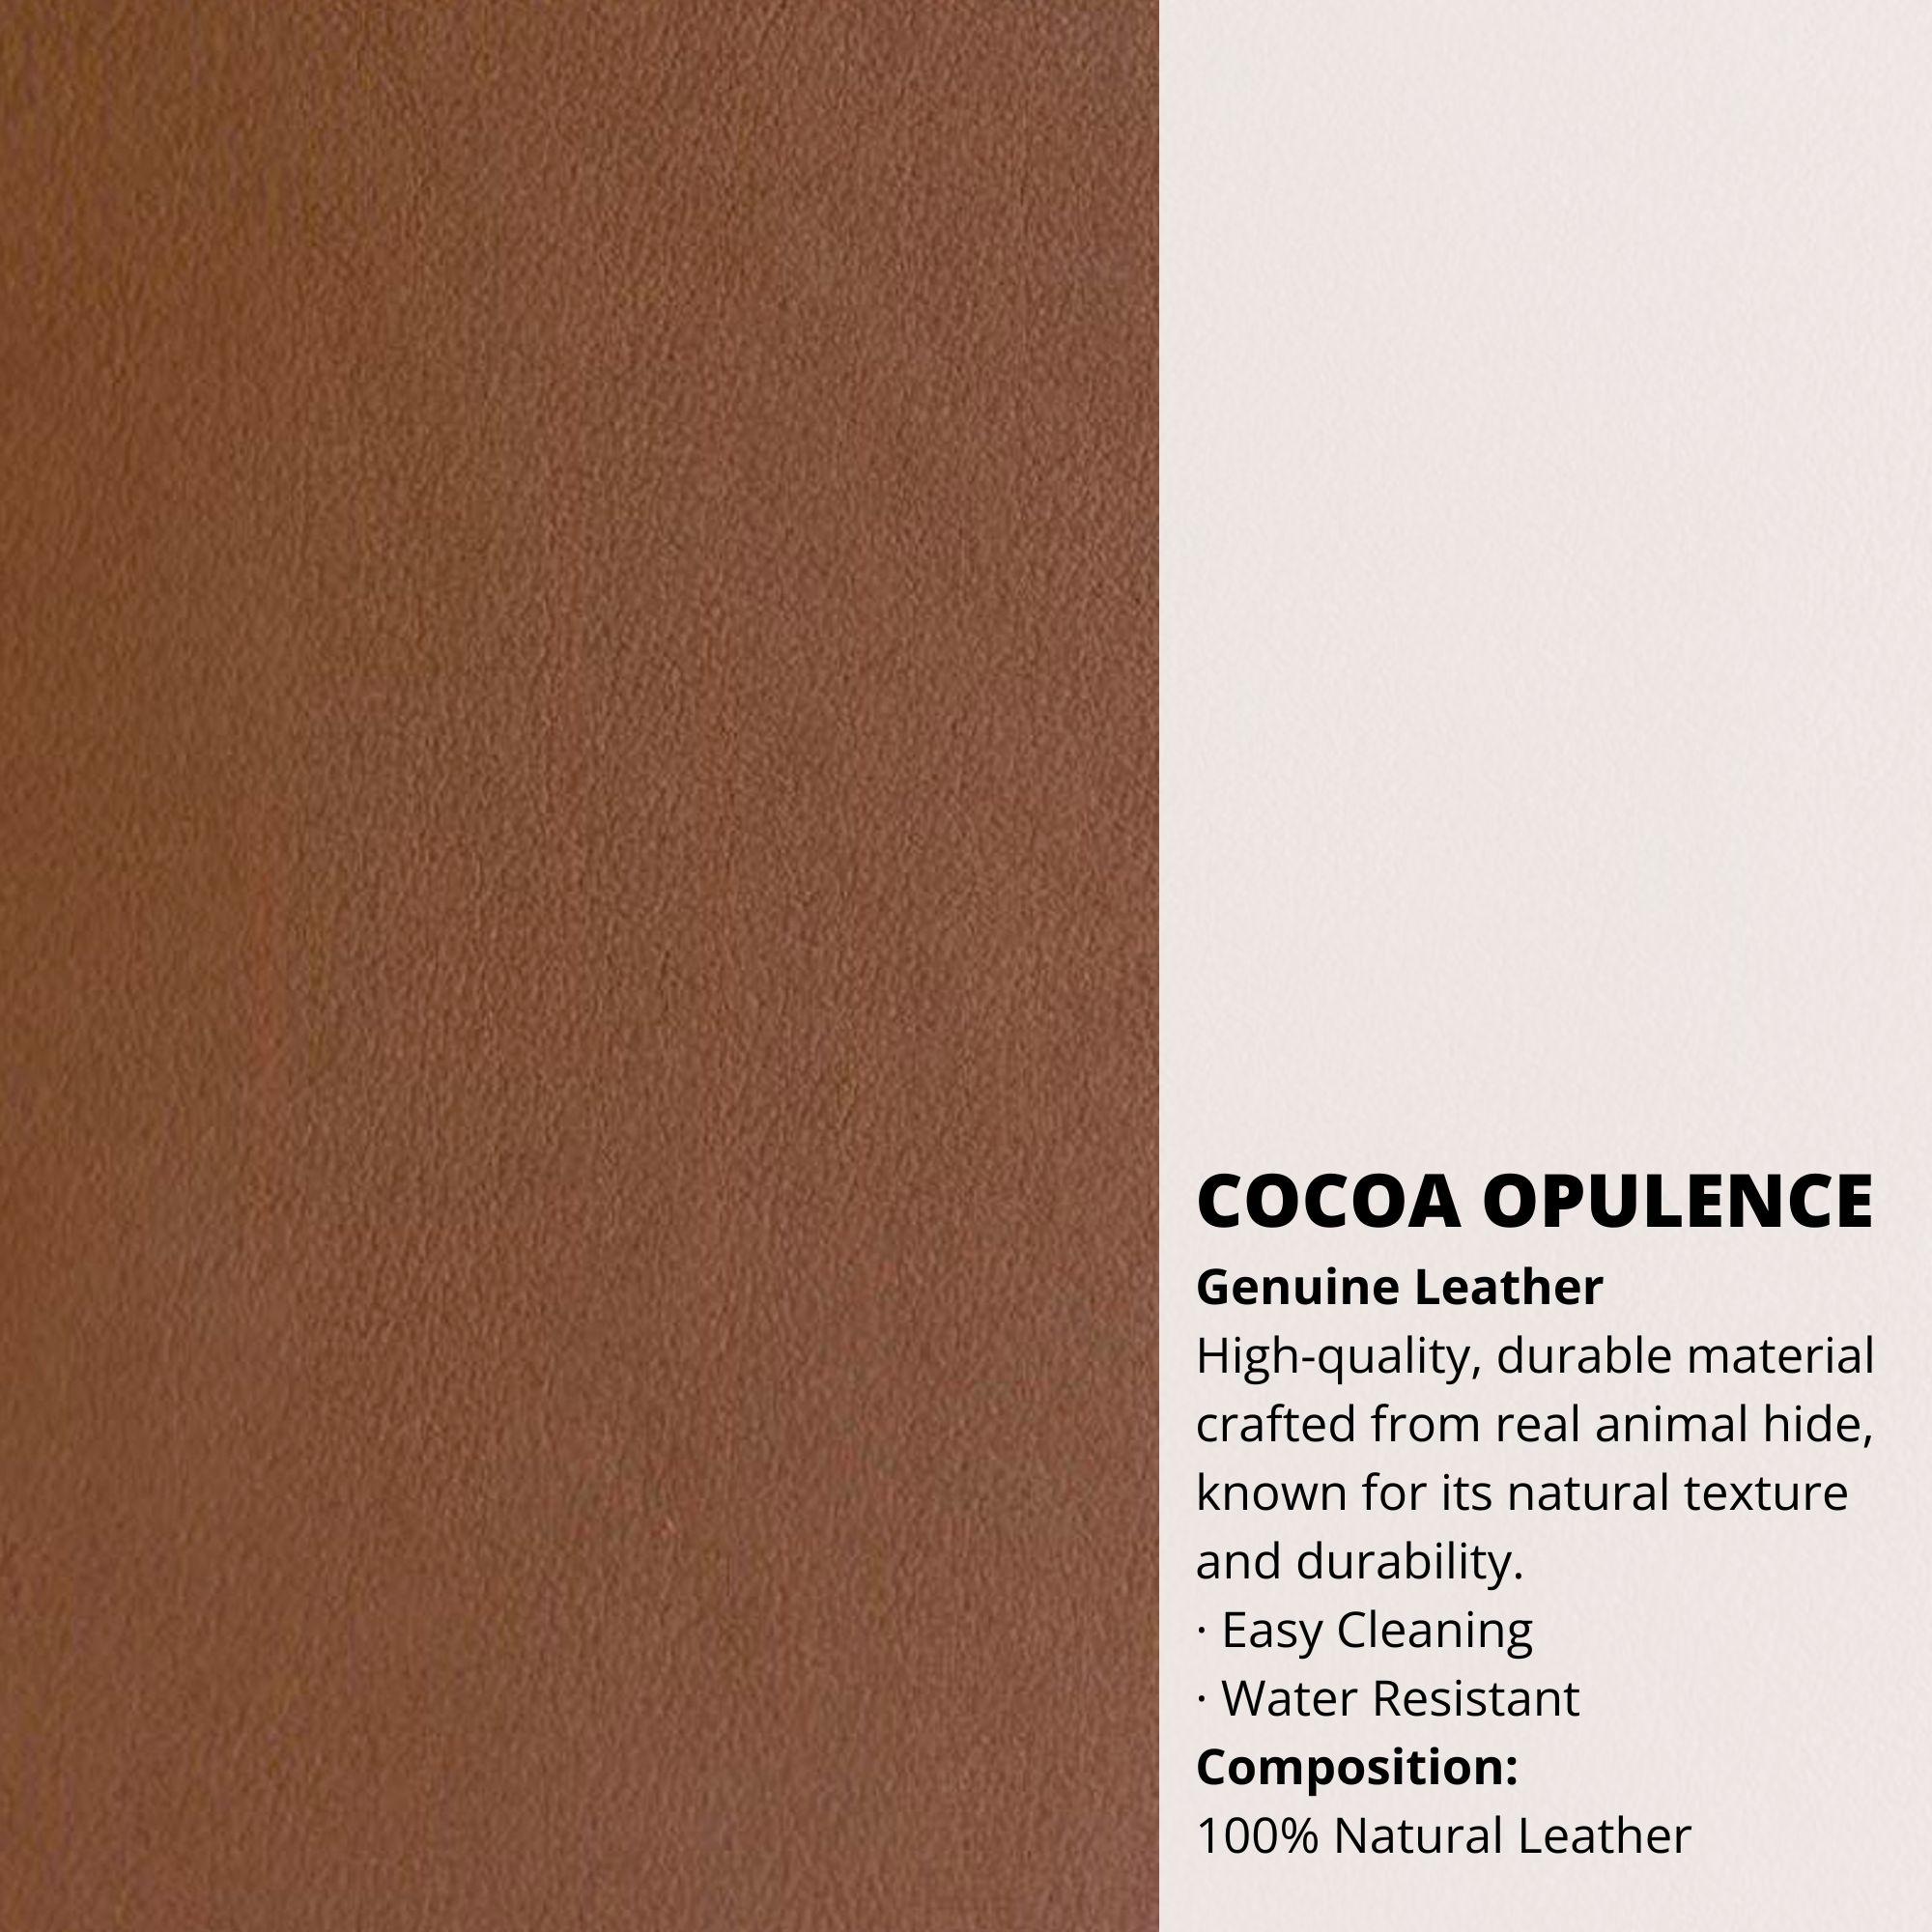 Cocoa Opulence